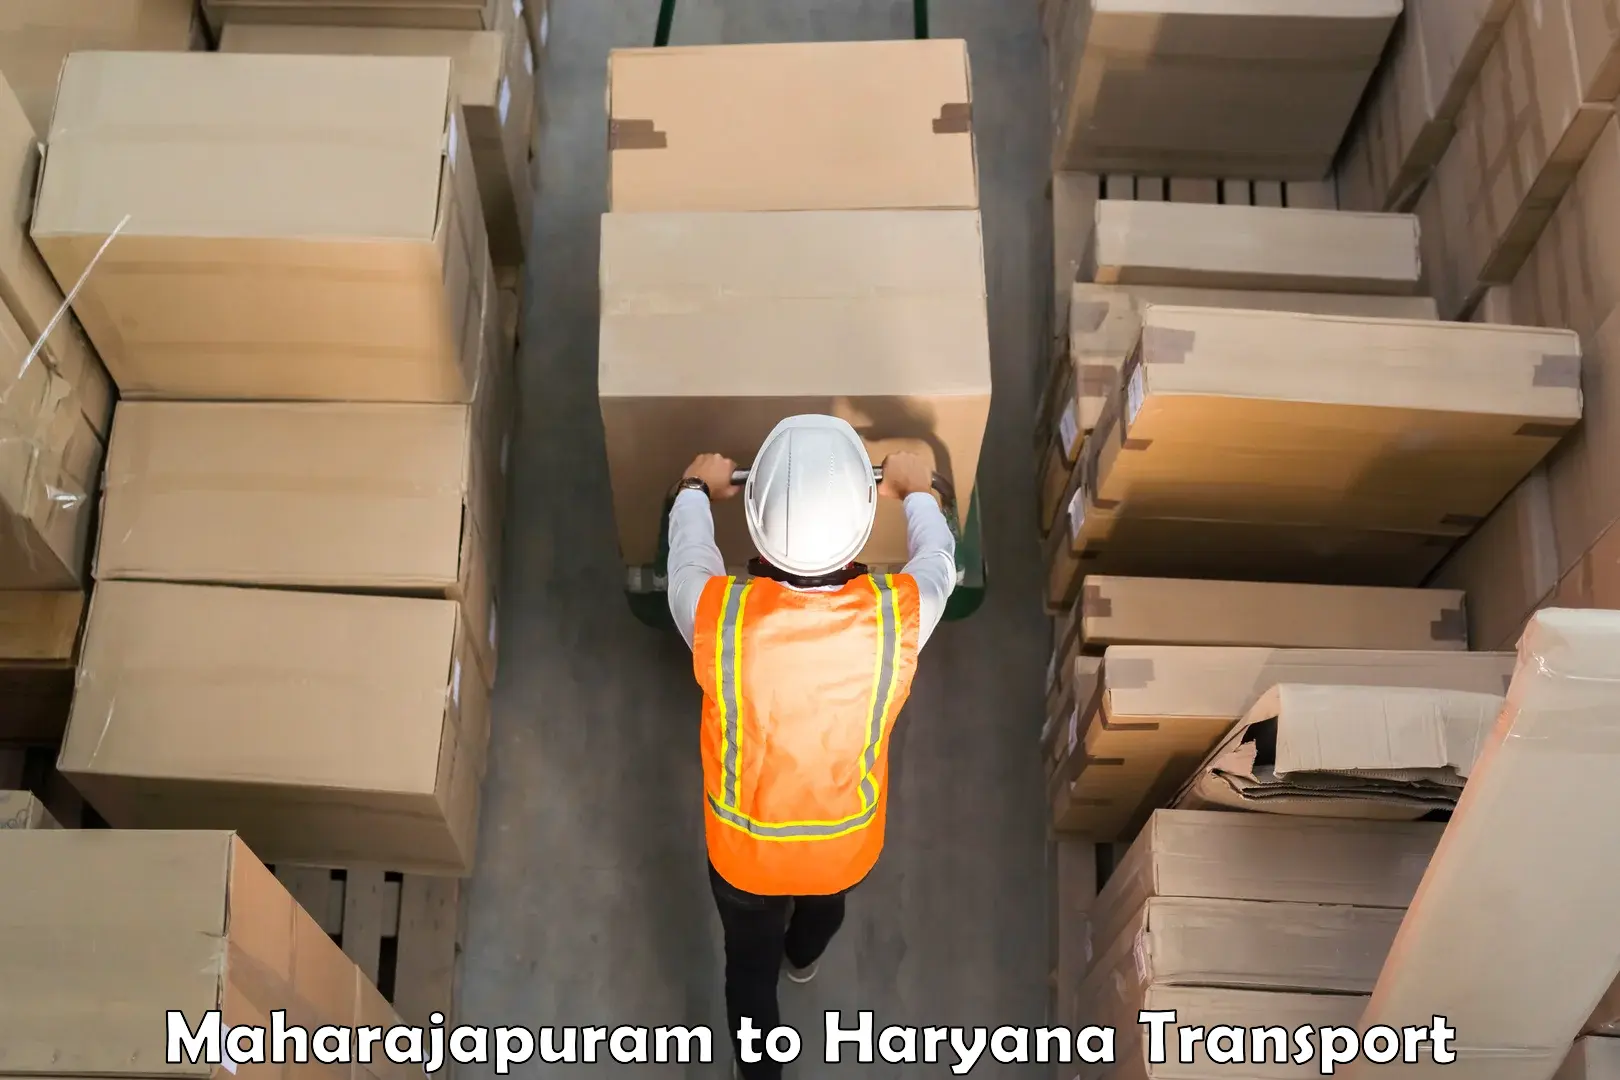 Container transport service Maharajapuram to Sonipat